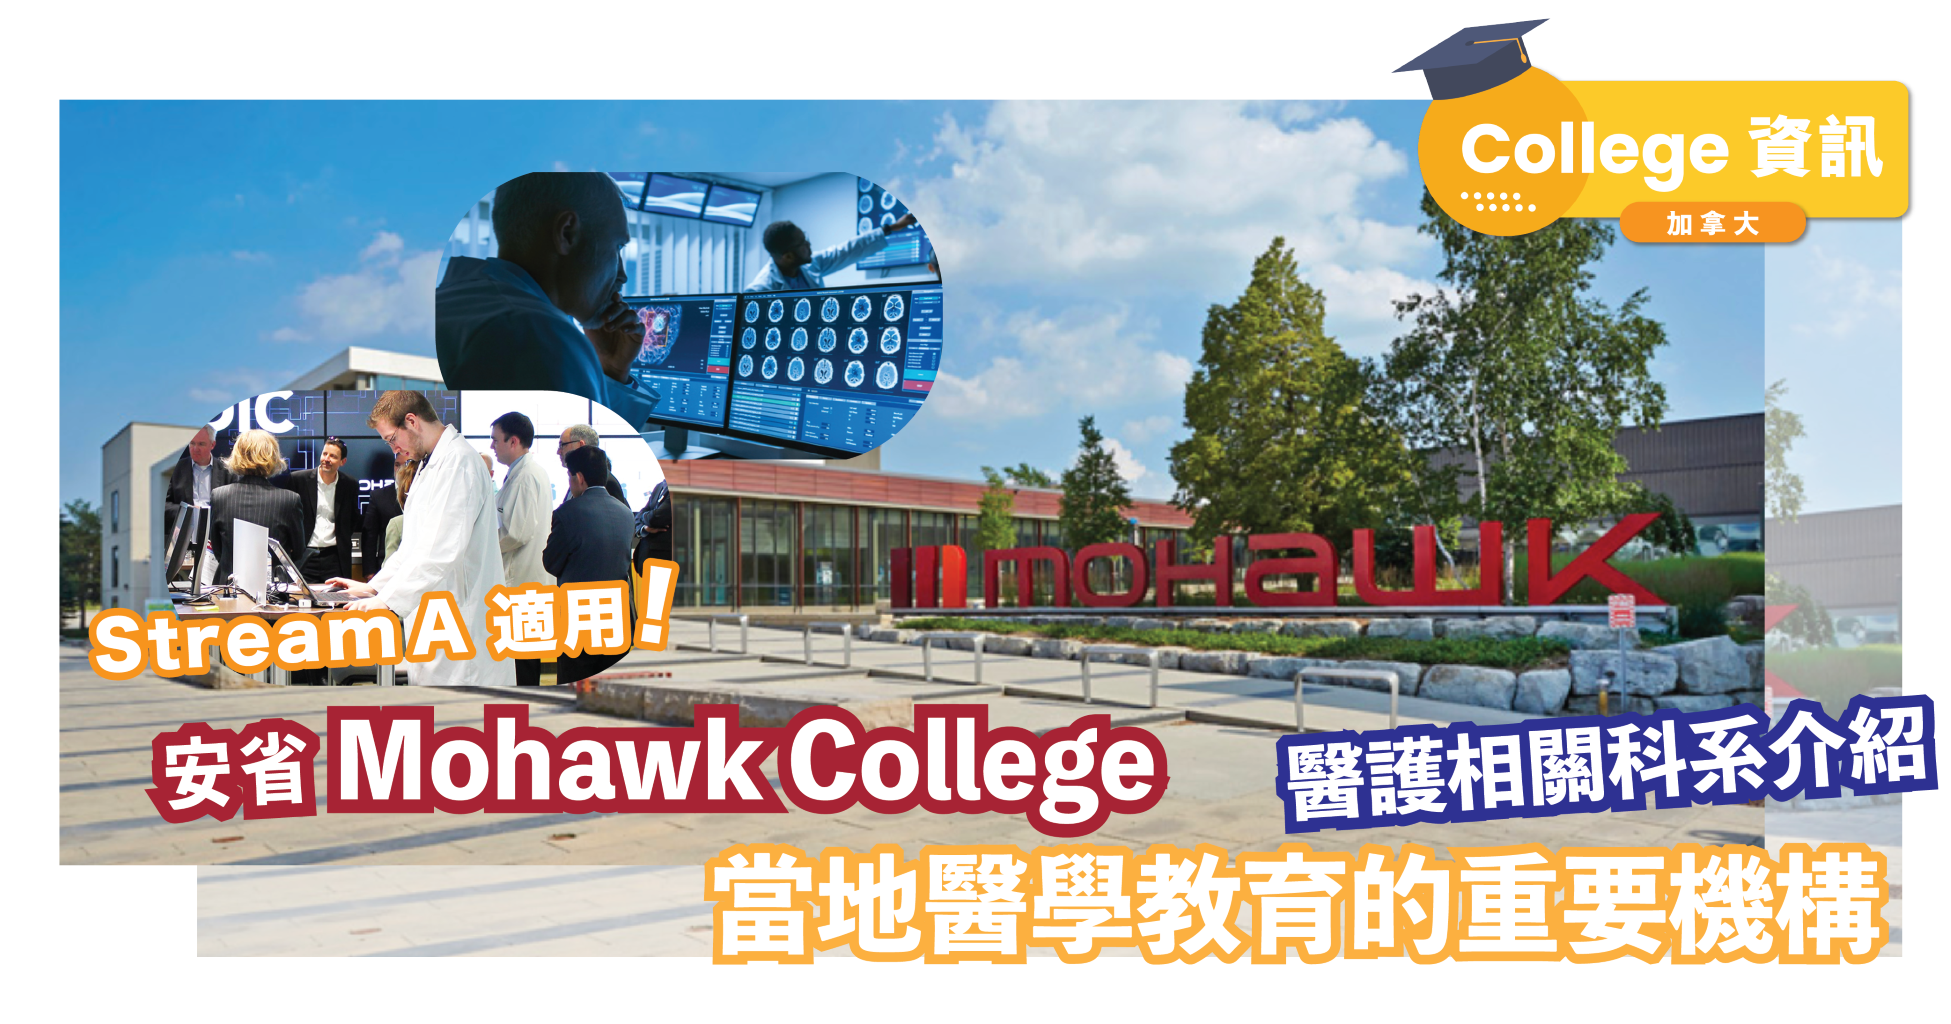 Stream A 課程|醫護相關科系介紹|安省著名醫學教育機構Mohawk College